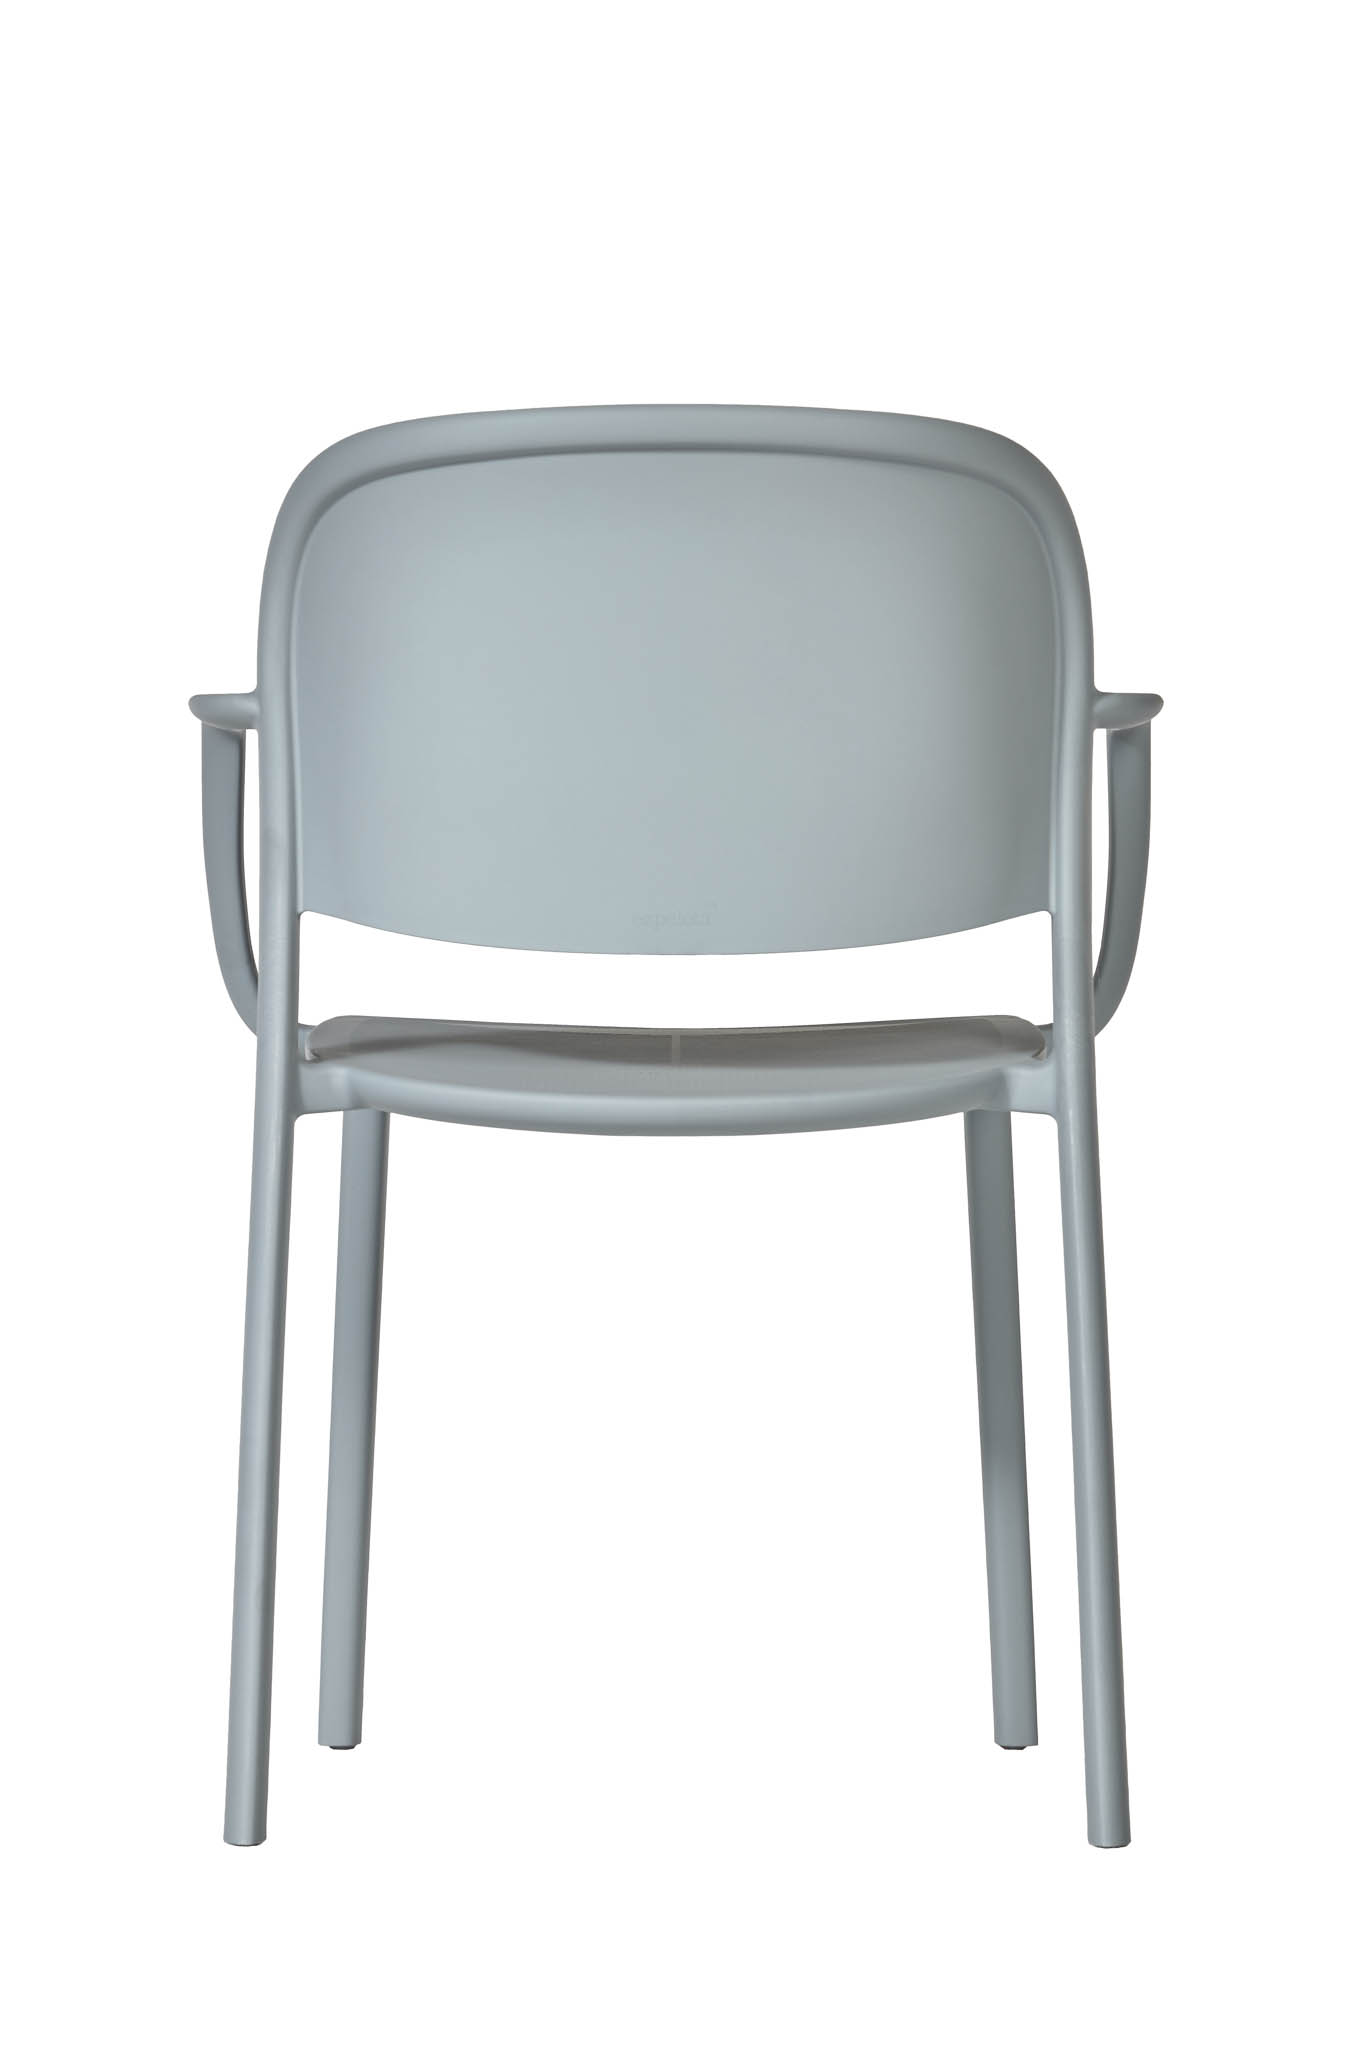 AD hotelska oprema Fotelja 01 - Blue grey boje slika proizvoda